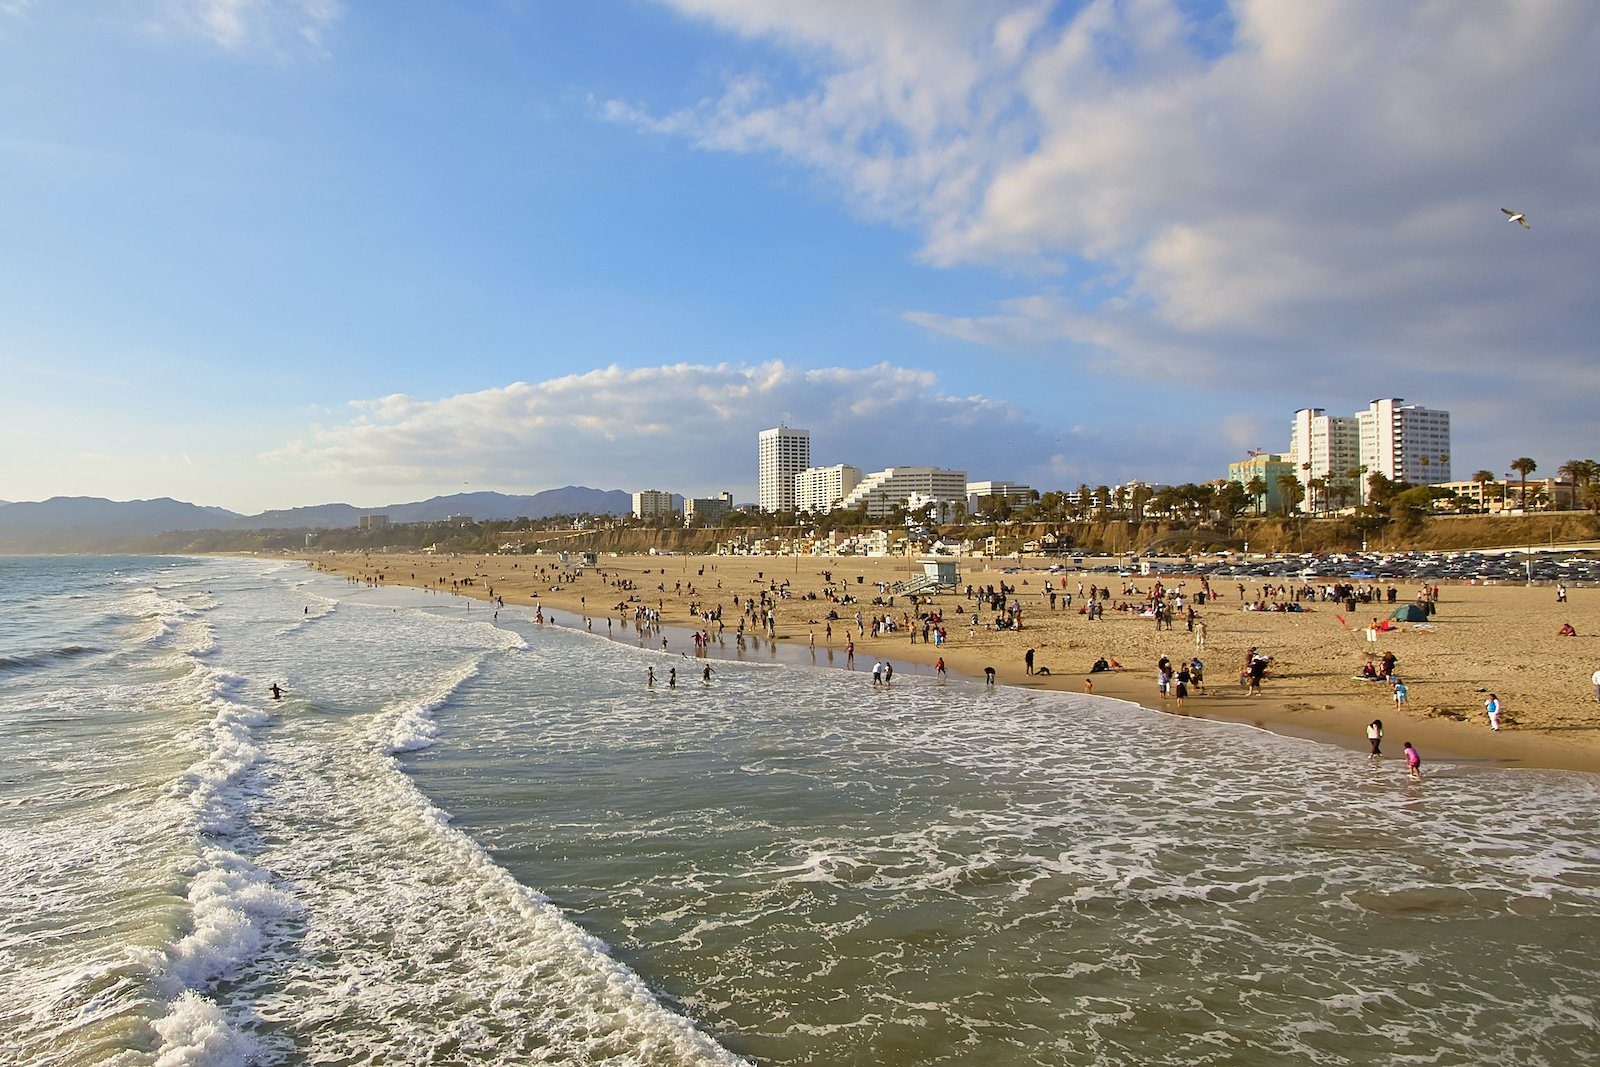 Santa Monica Beach California